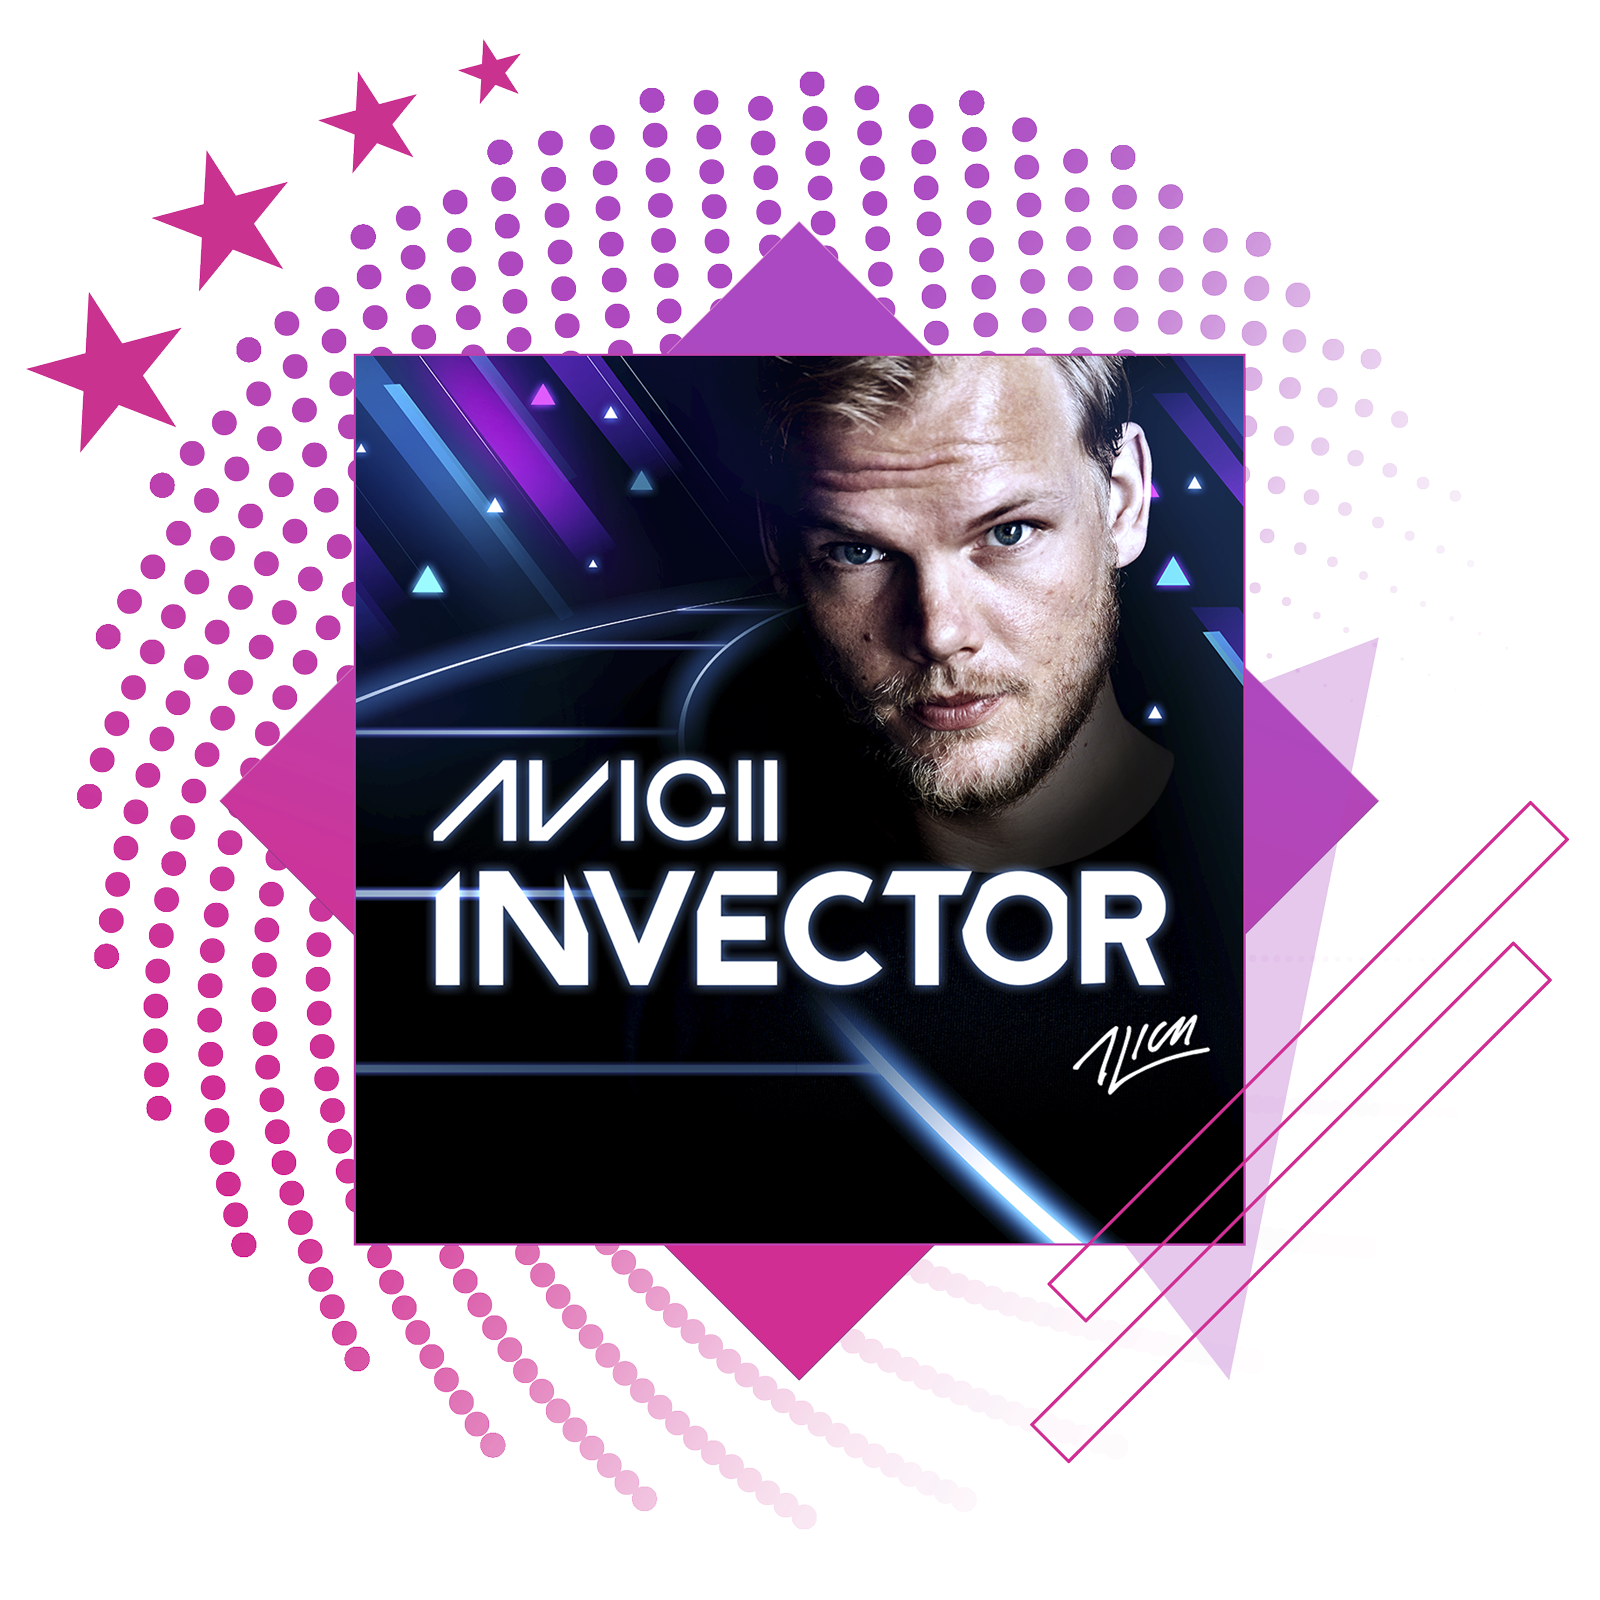 صورة رمزية لأفضل ألعاب الإيقاع الموسيقي تعرض صورة فنية أساسية من Aviici:‎ Invector.